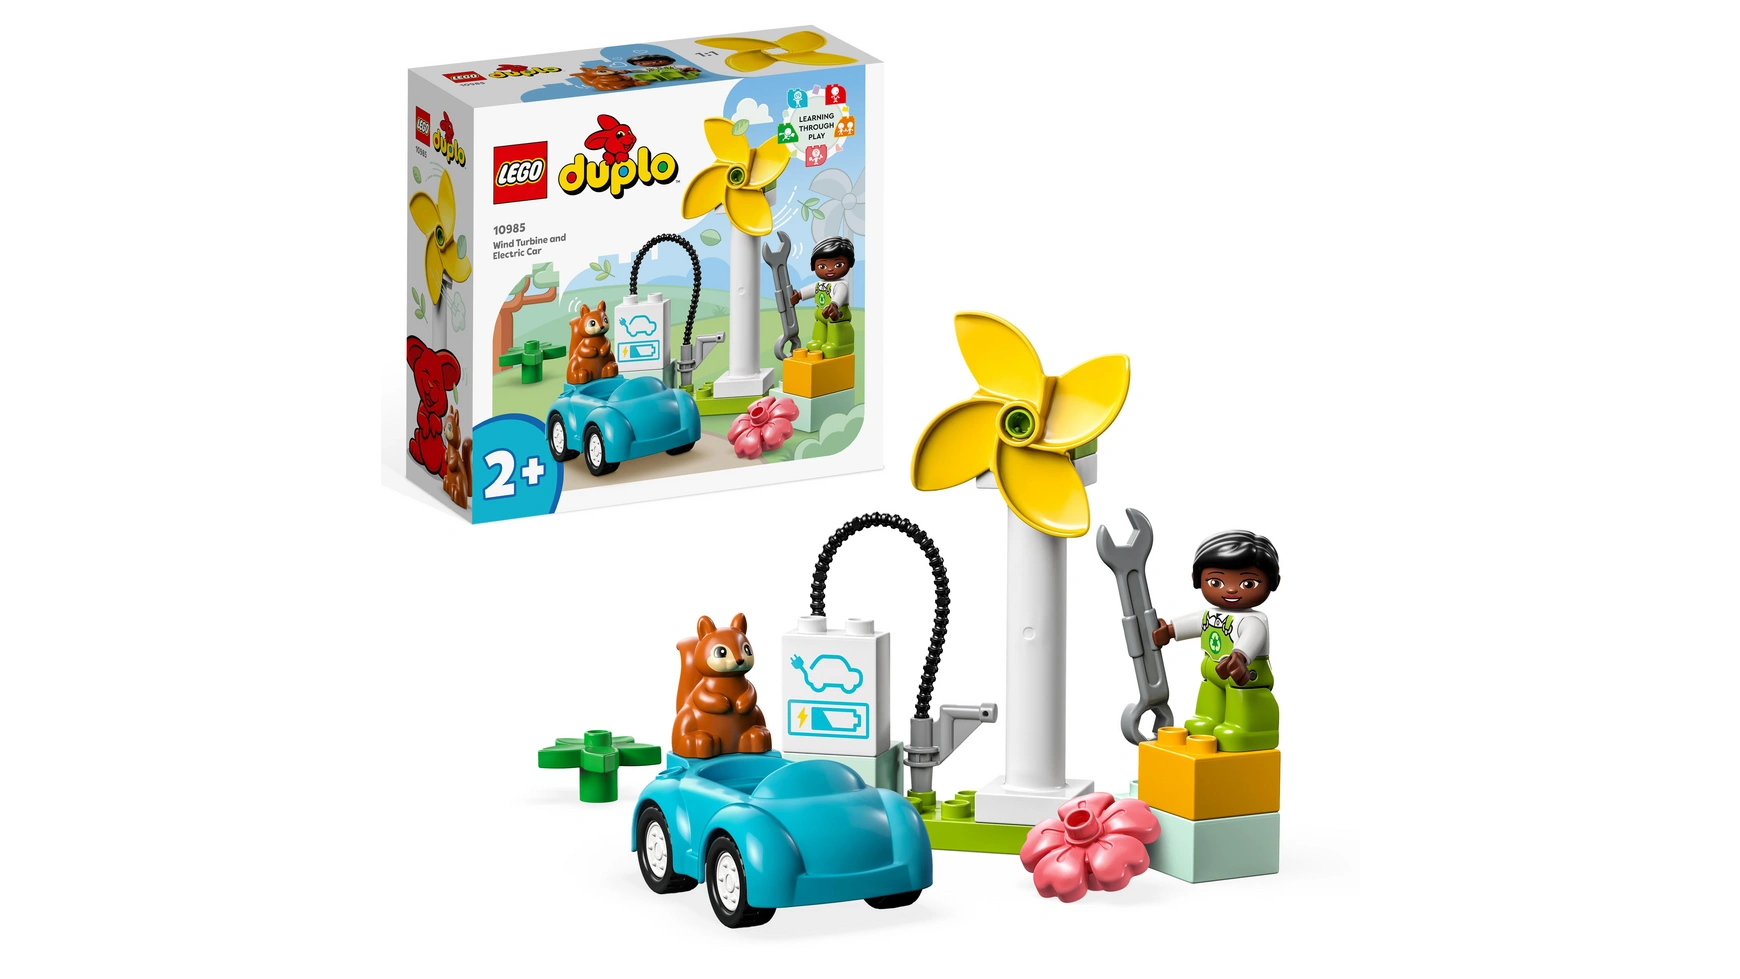 Lego DUPLO Town ветряная турбина и электромобиль, развивающая игрушка для детей от 2 лет и старше